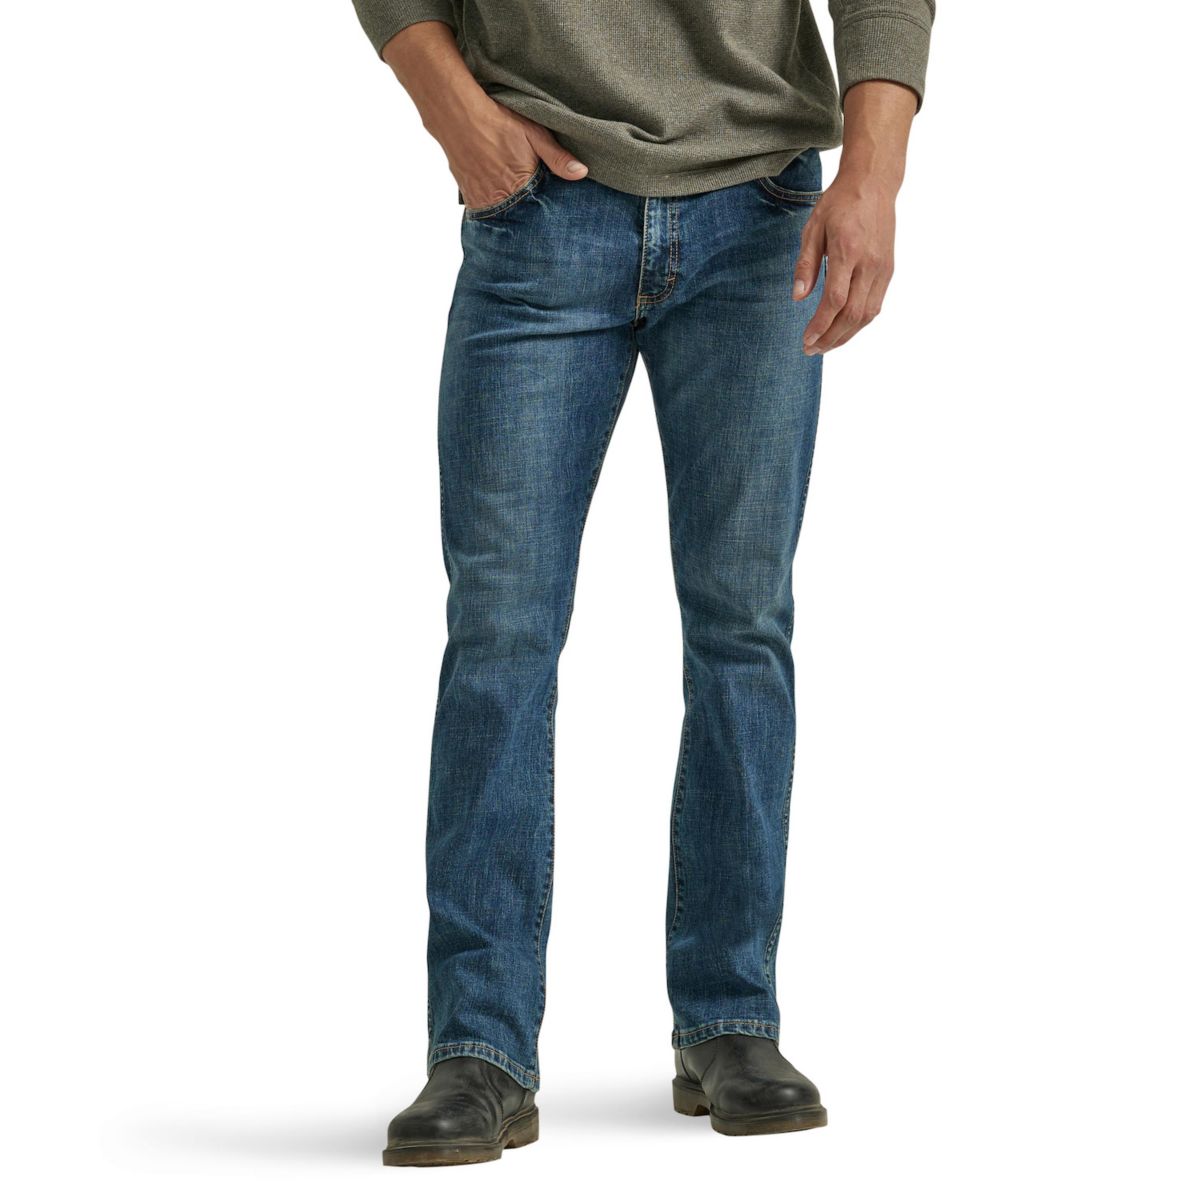 Men's Wrangler Slim Bootcut Jeans Wrangler